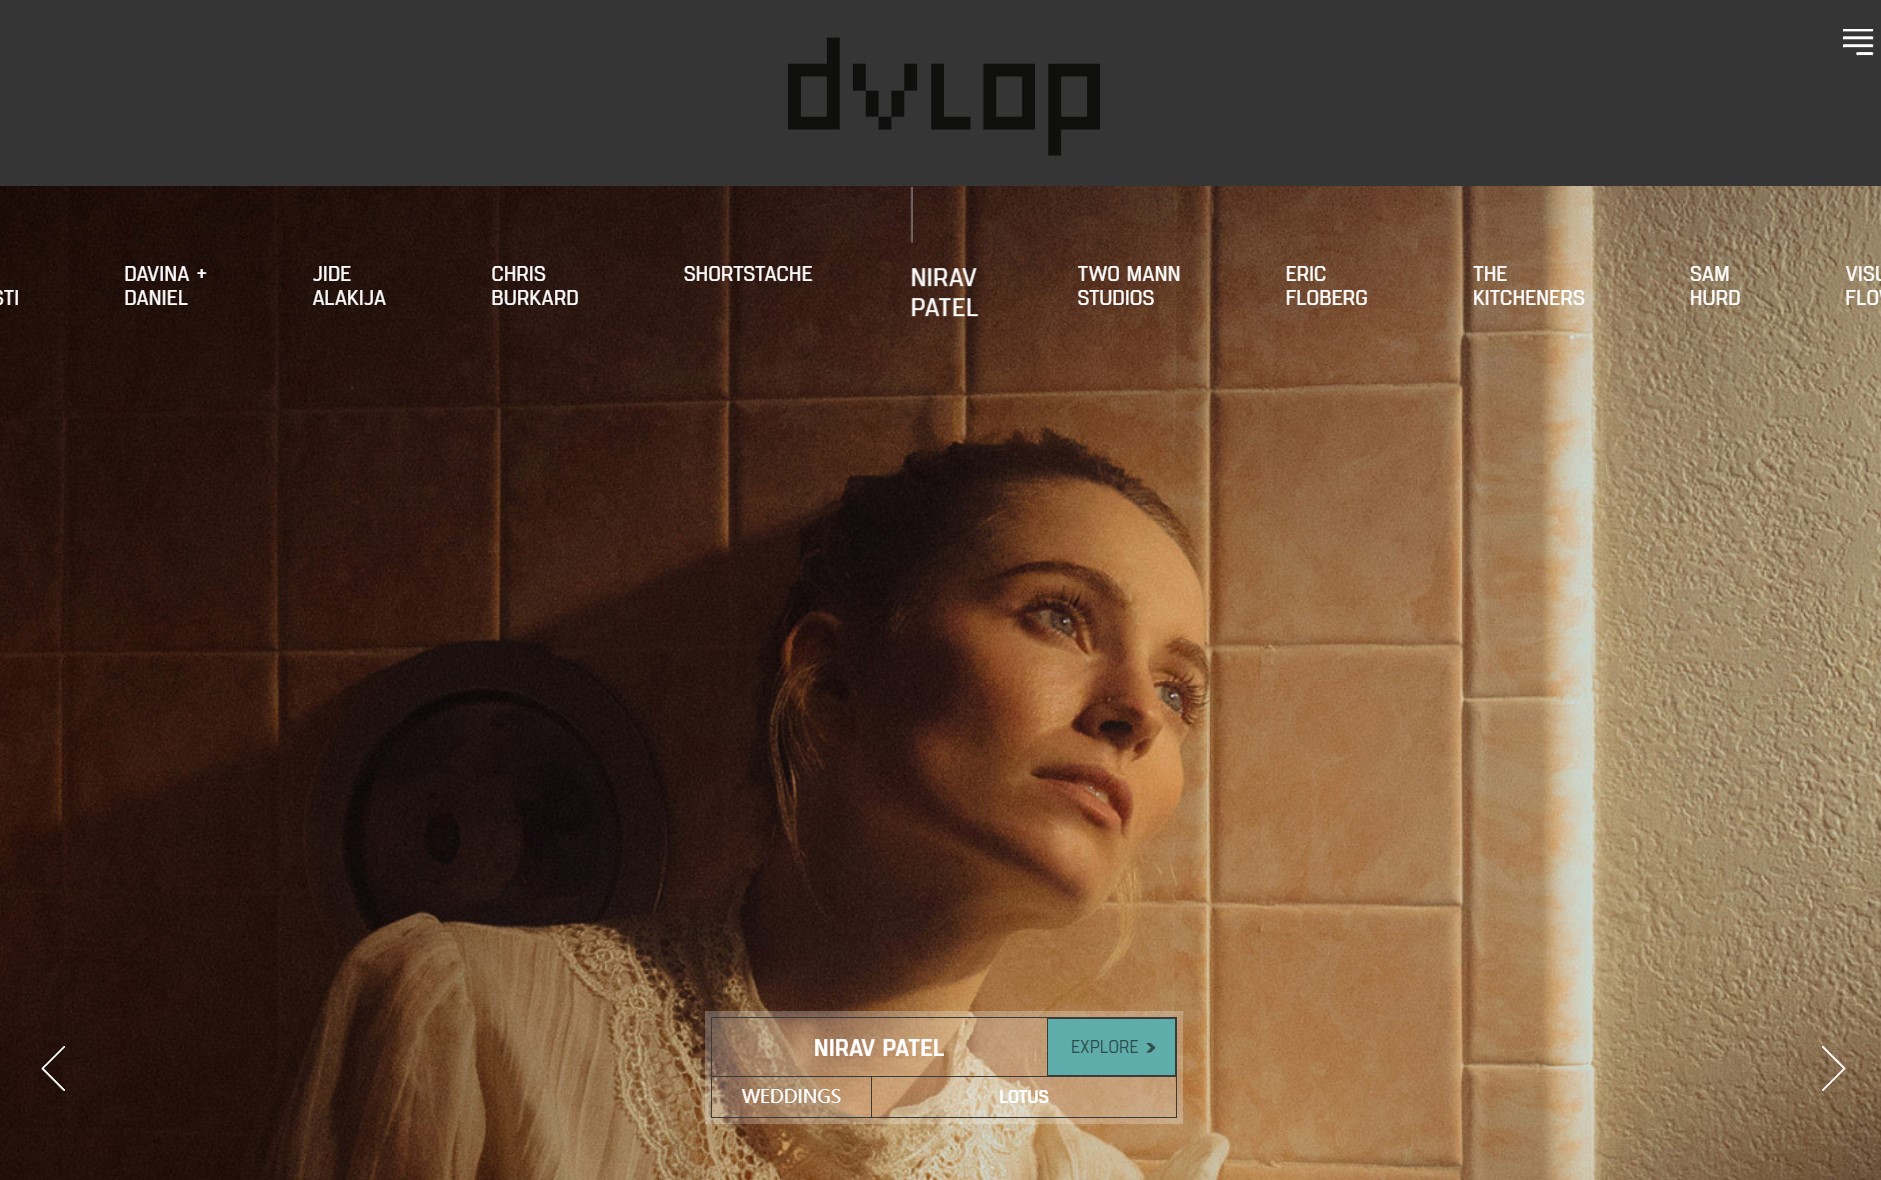 DVLOP X Profile